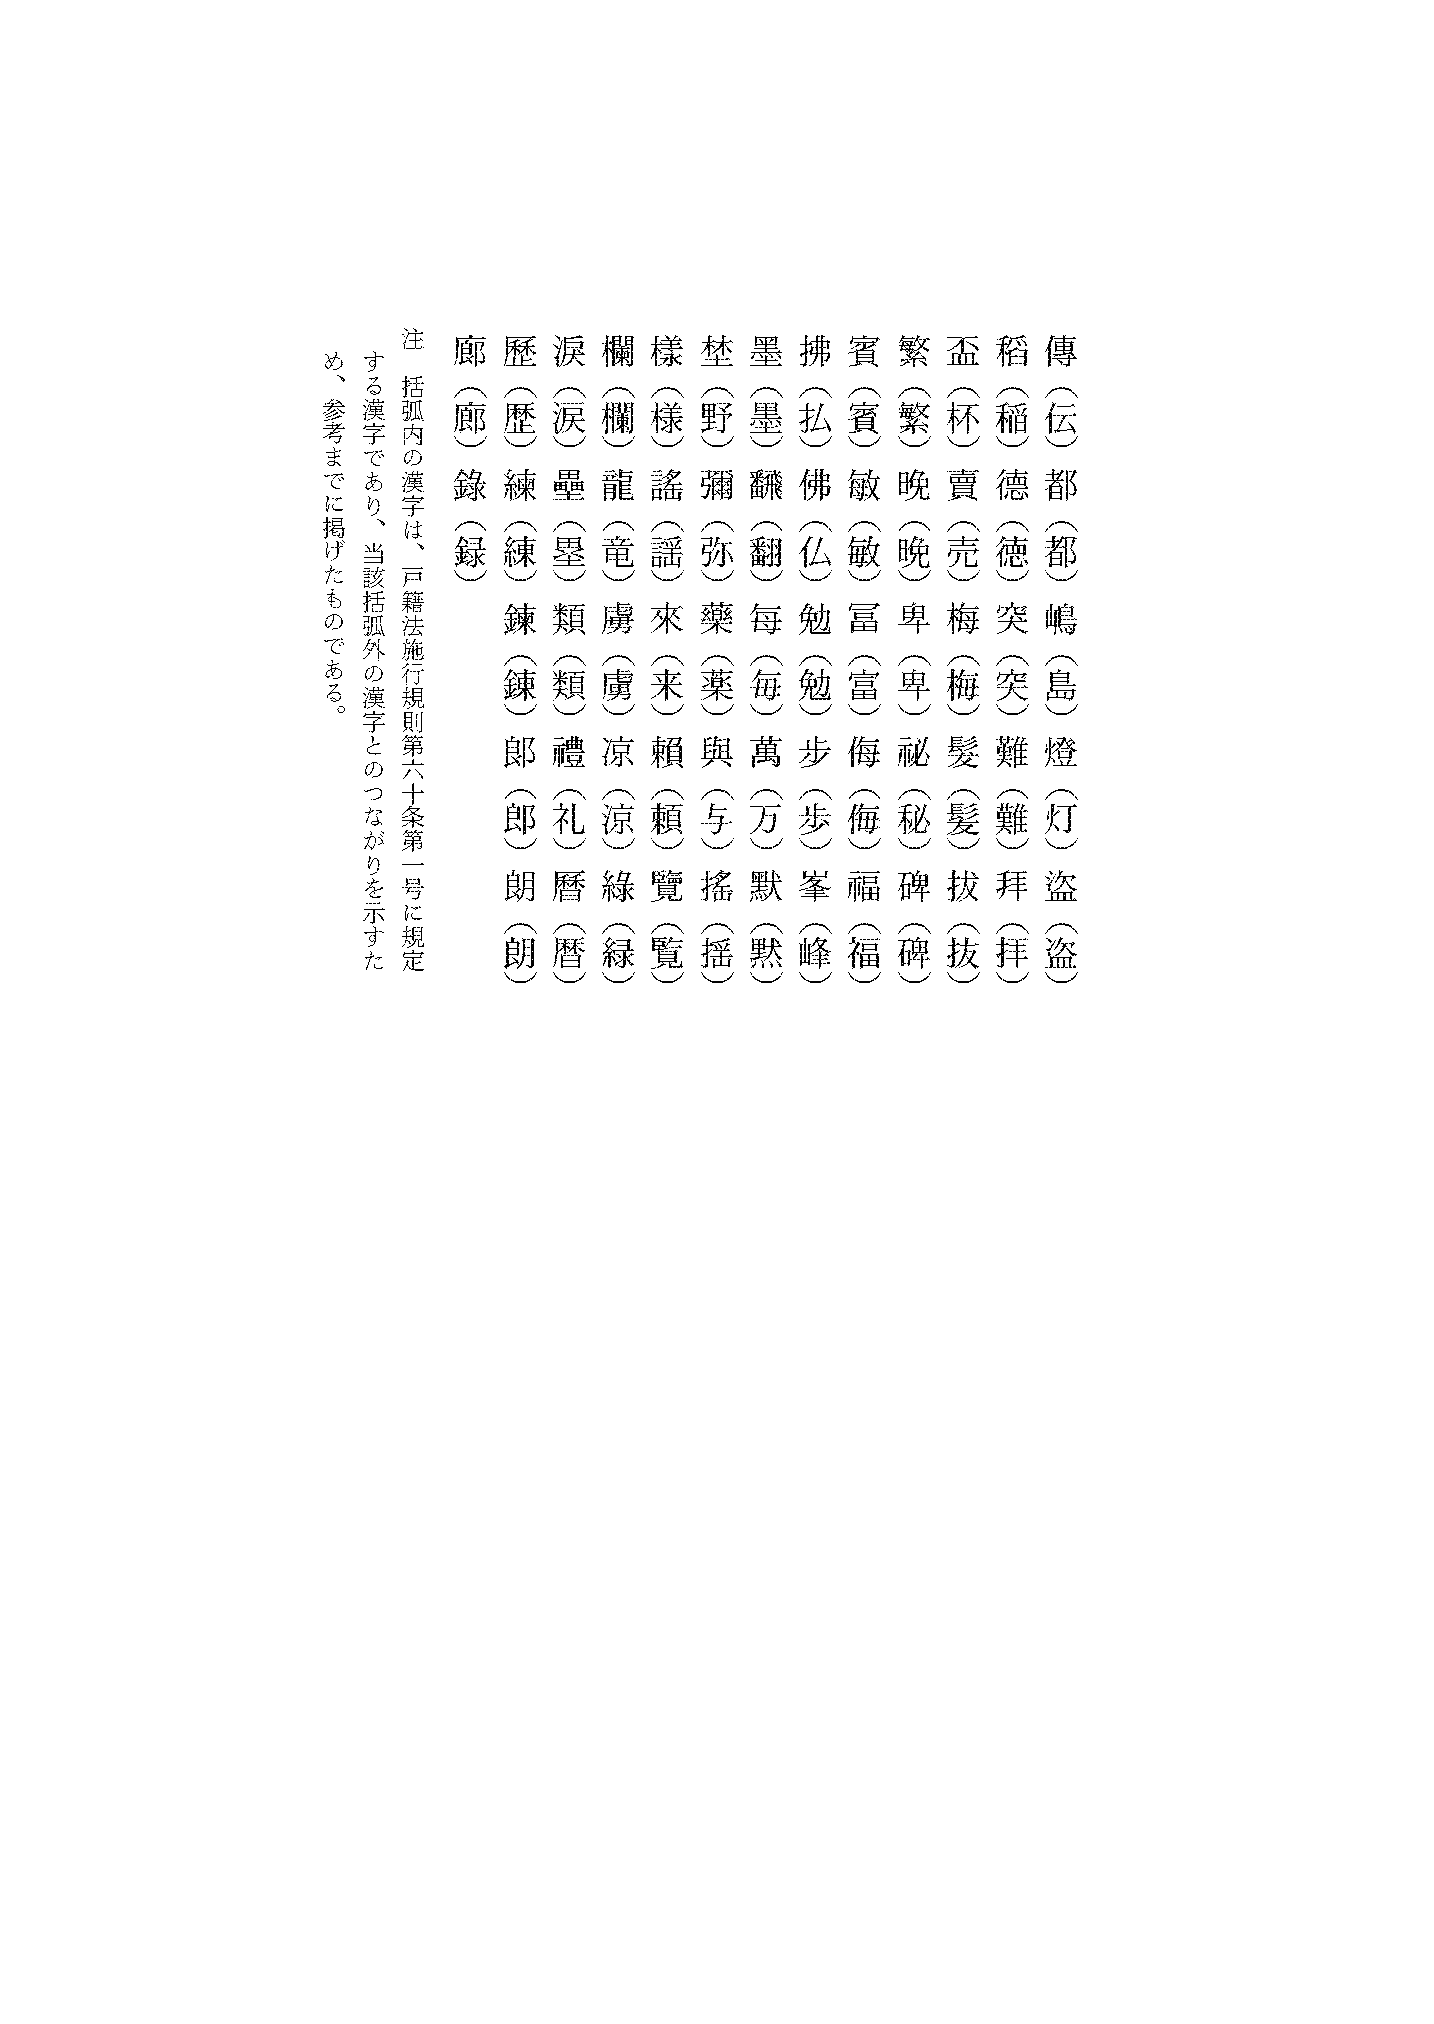 戸籍法施行規則別表第２漢字の表-001 ページ 5.png